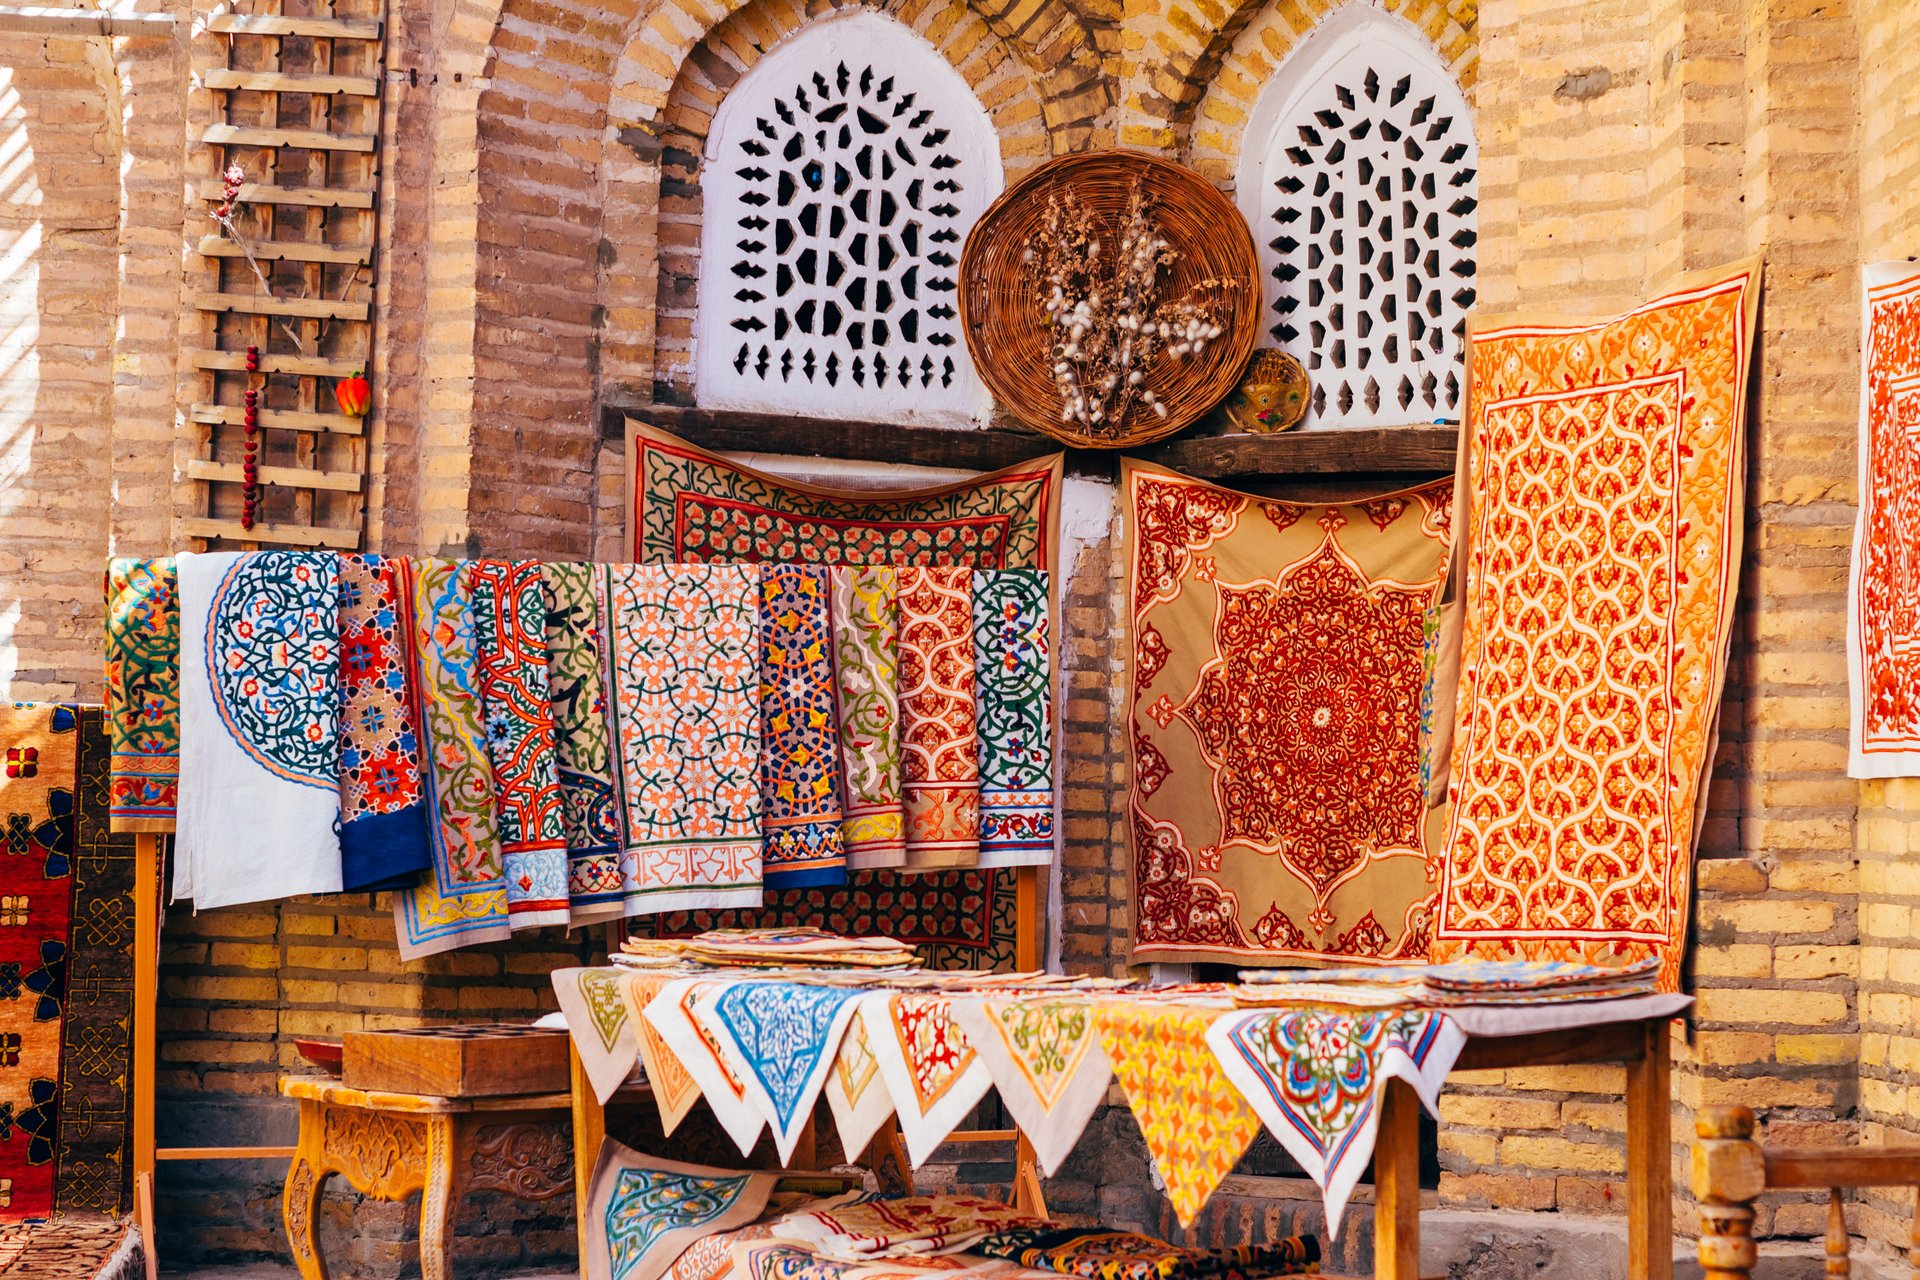 Large gamme de tapis faits à la main, les tapis de soie ouzbeks traditionnels noués, les nappes brodées et le linge de lit dans le petit bazar, Khiva, Ouzbékistan,